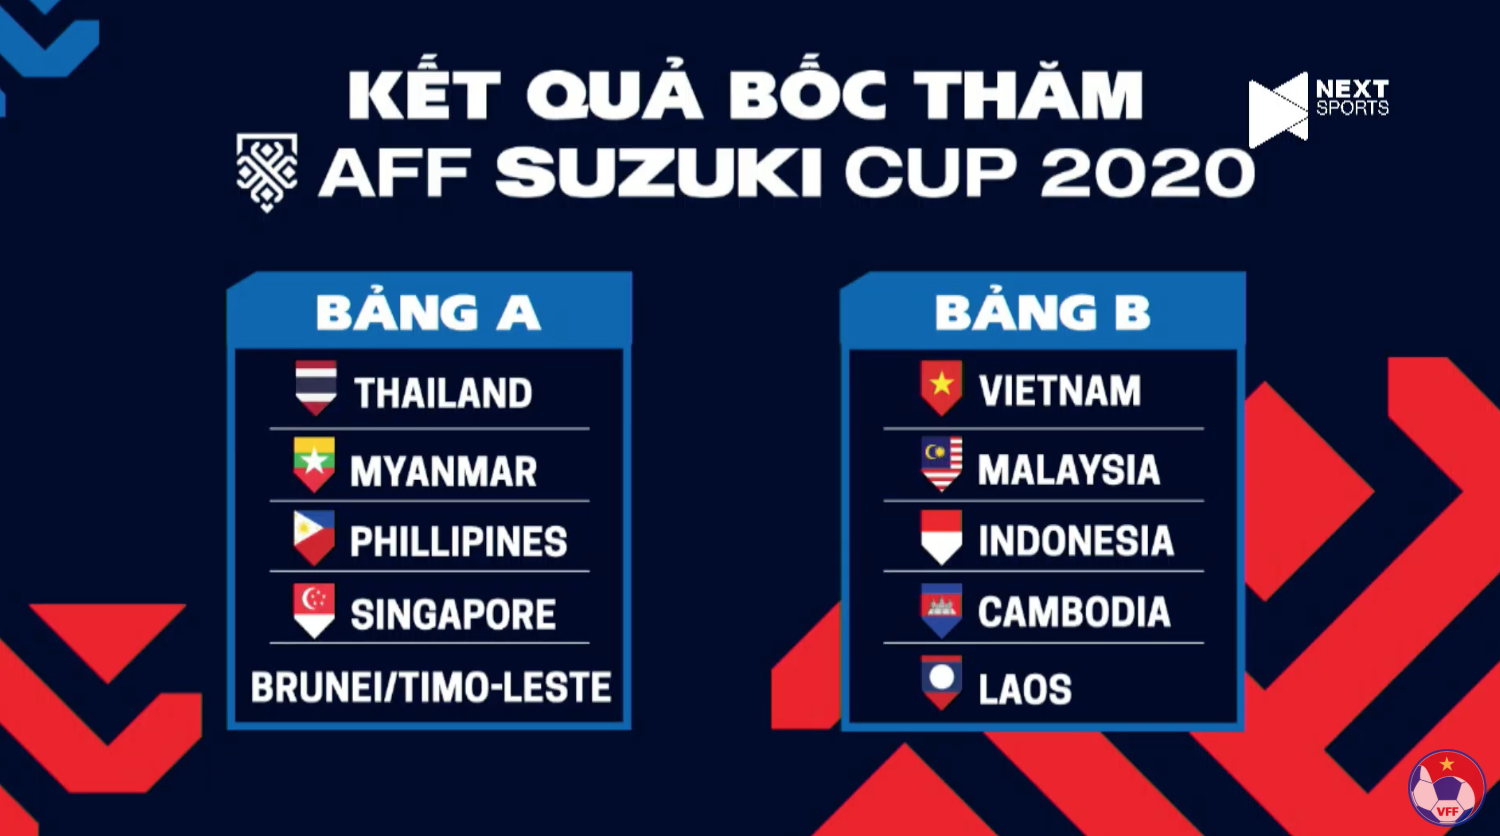 Kết quả bốc thăm AFF Suzuki Cup 2020: ĐT Việt Nam vào bảng đấu dễ thở